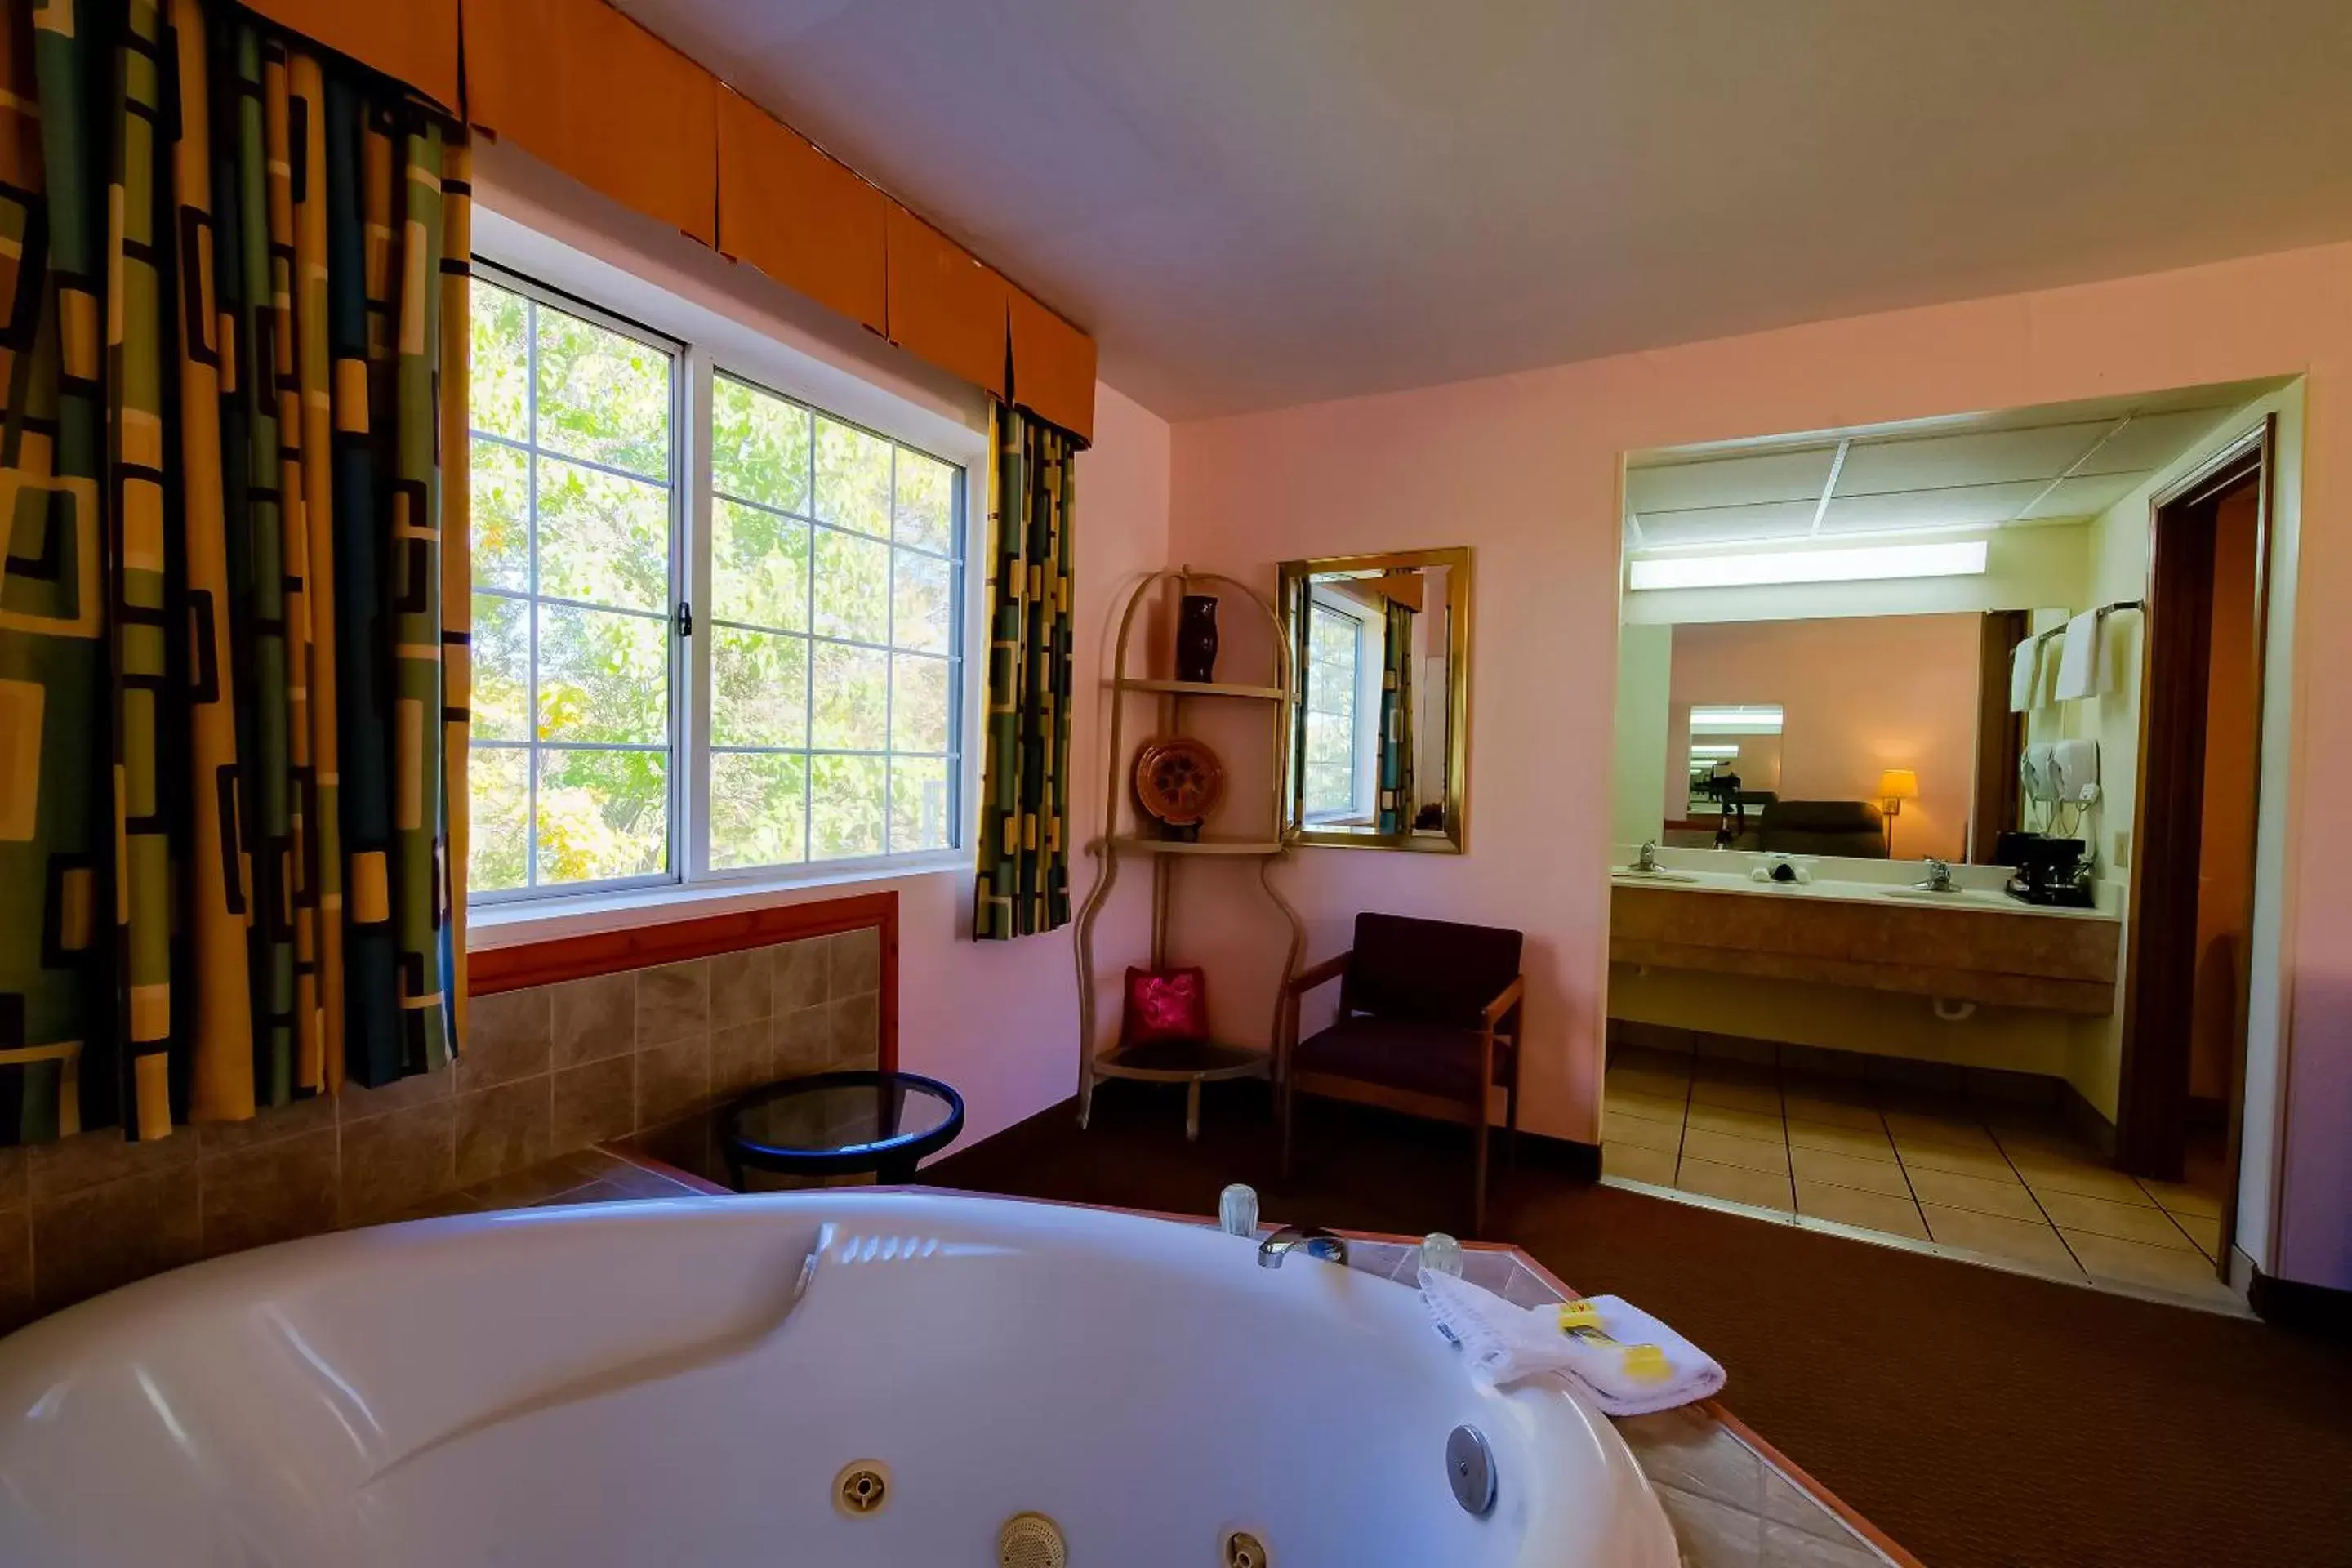 Area and facilities, Bathroom in Hotel O Eureka Springs - Christ of Ozark Area